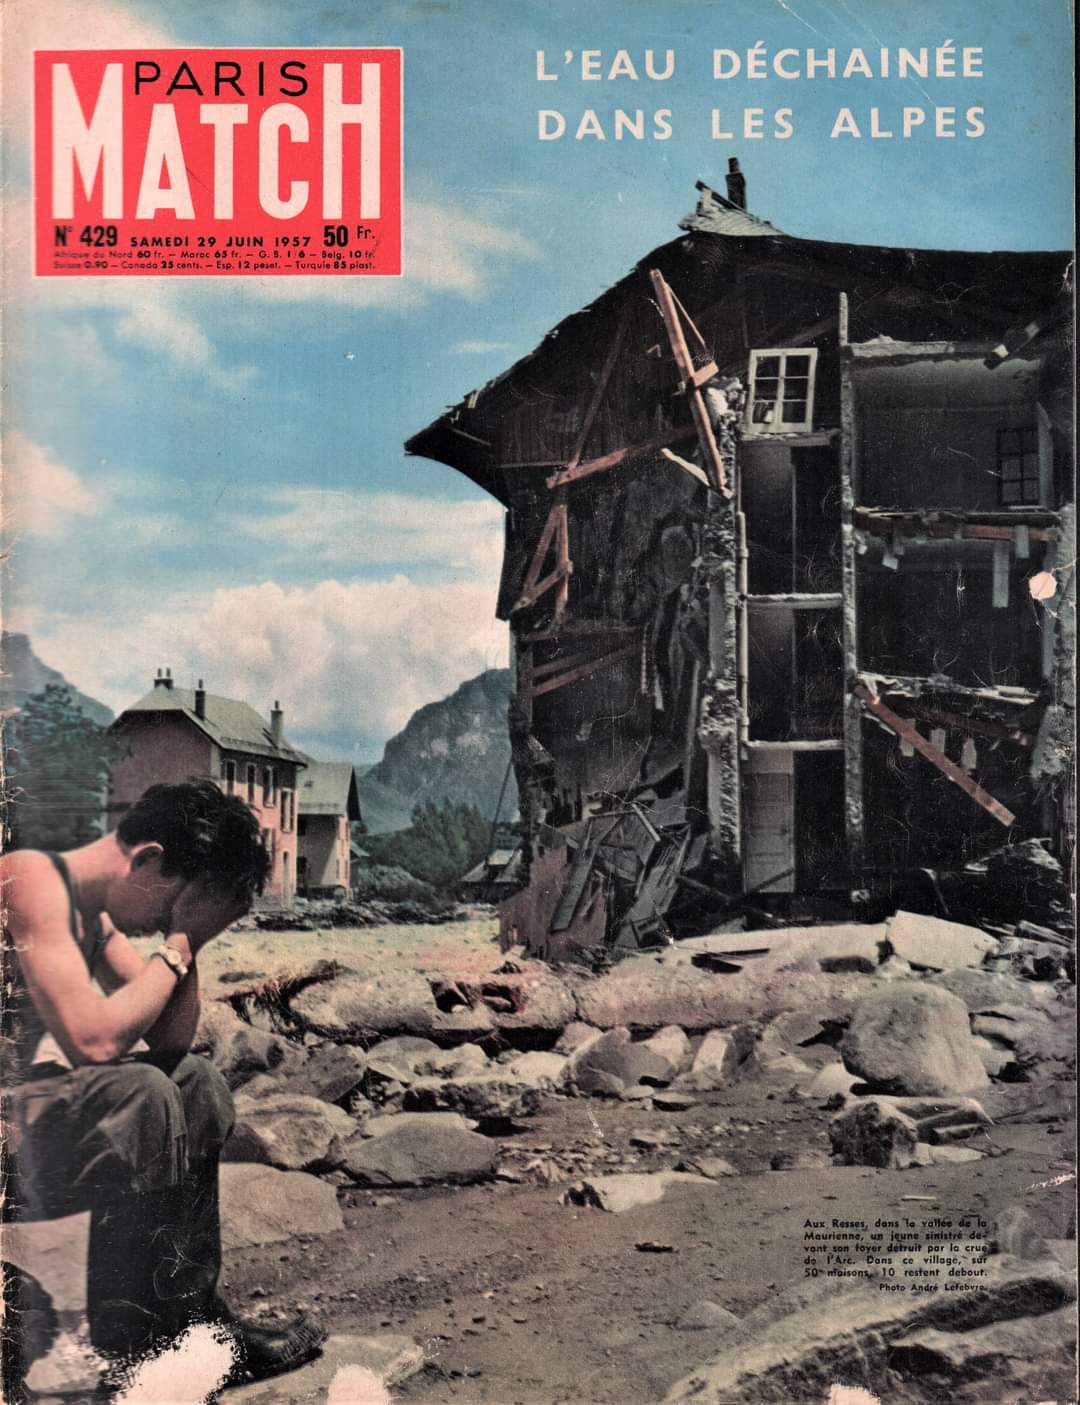 La une de paris Match à la suite de la crue de 1957 en Maurienne